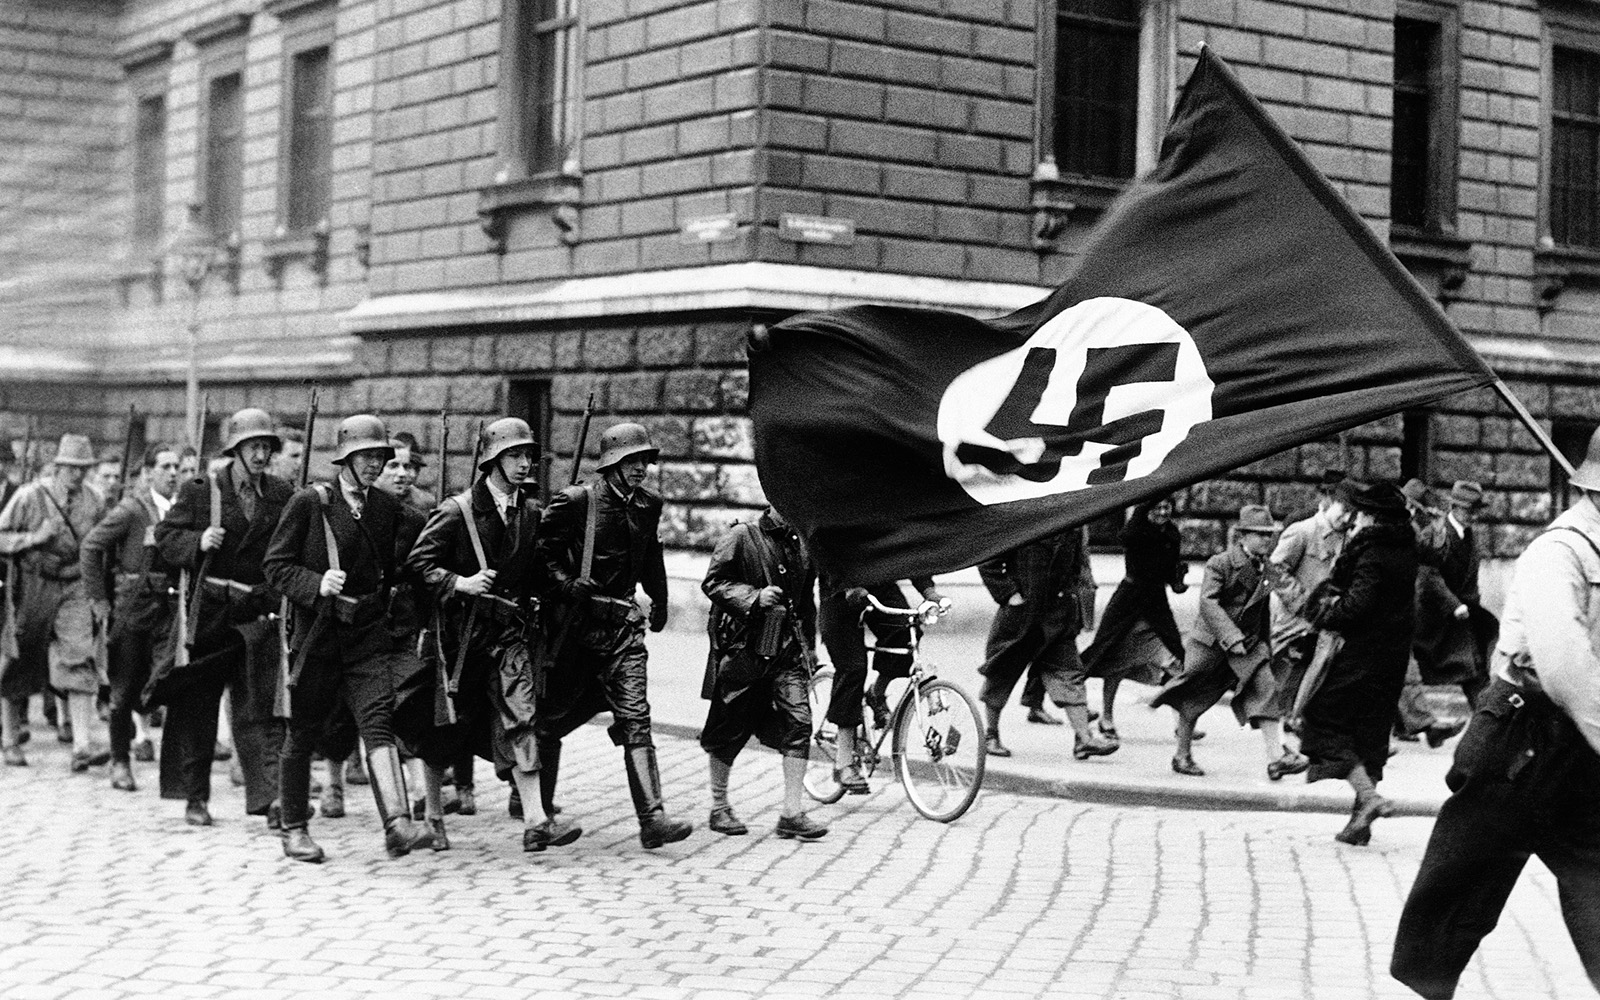 Febbraio 1933, l'avvento del nazismo e l’inizio della fine anche per l’arte